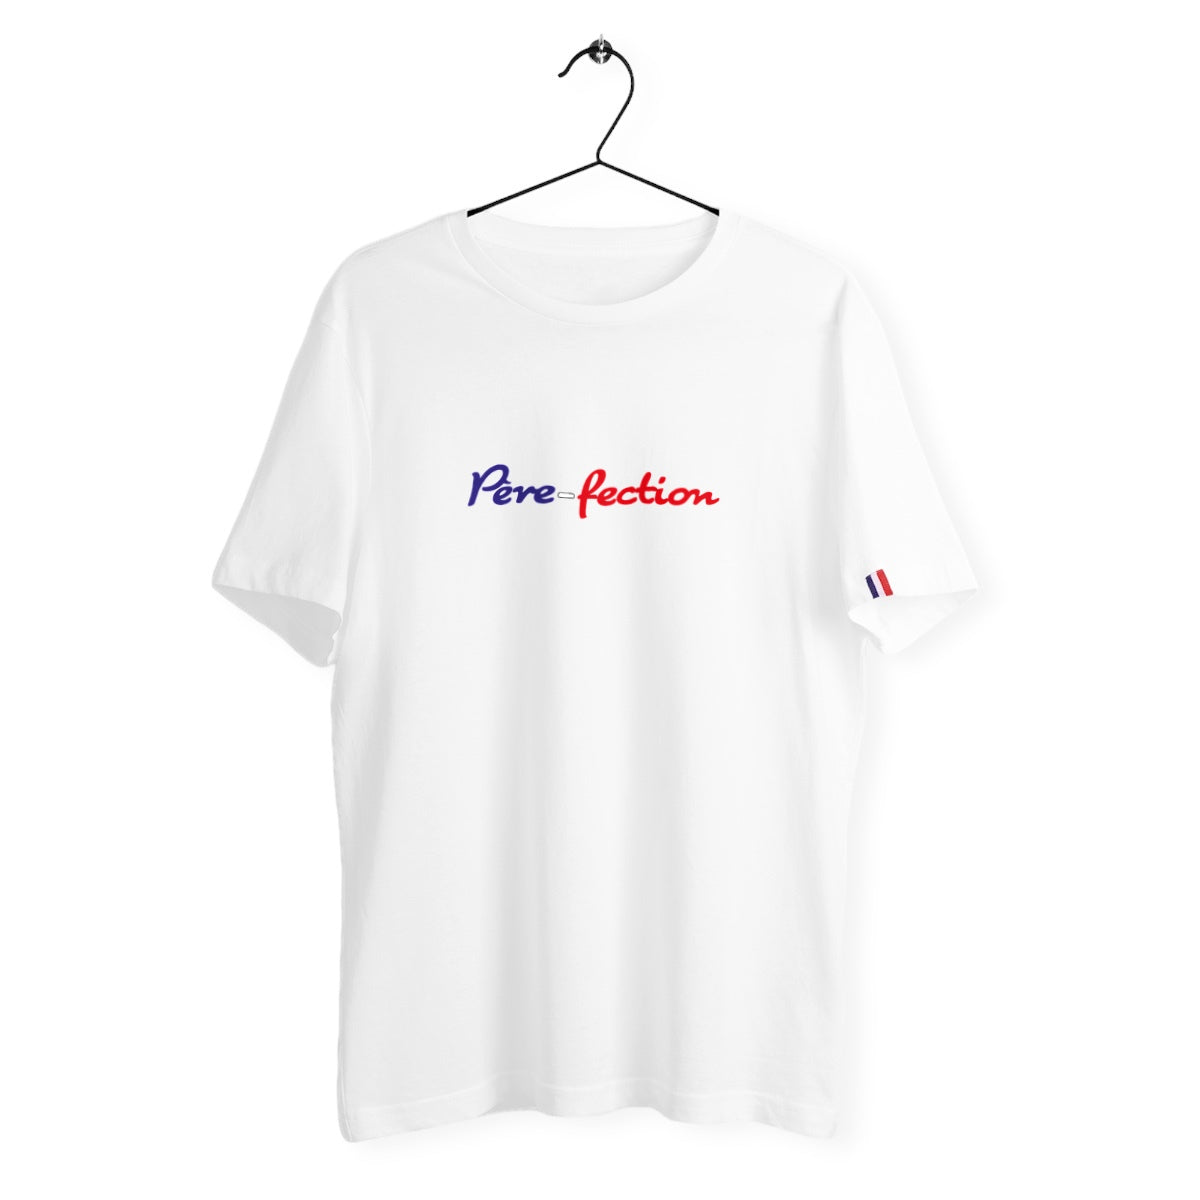 T-shirt homme père-fection France édition